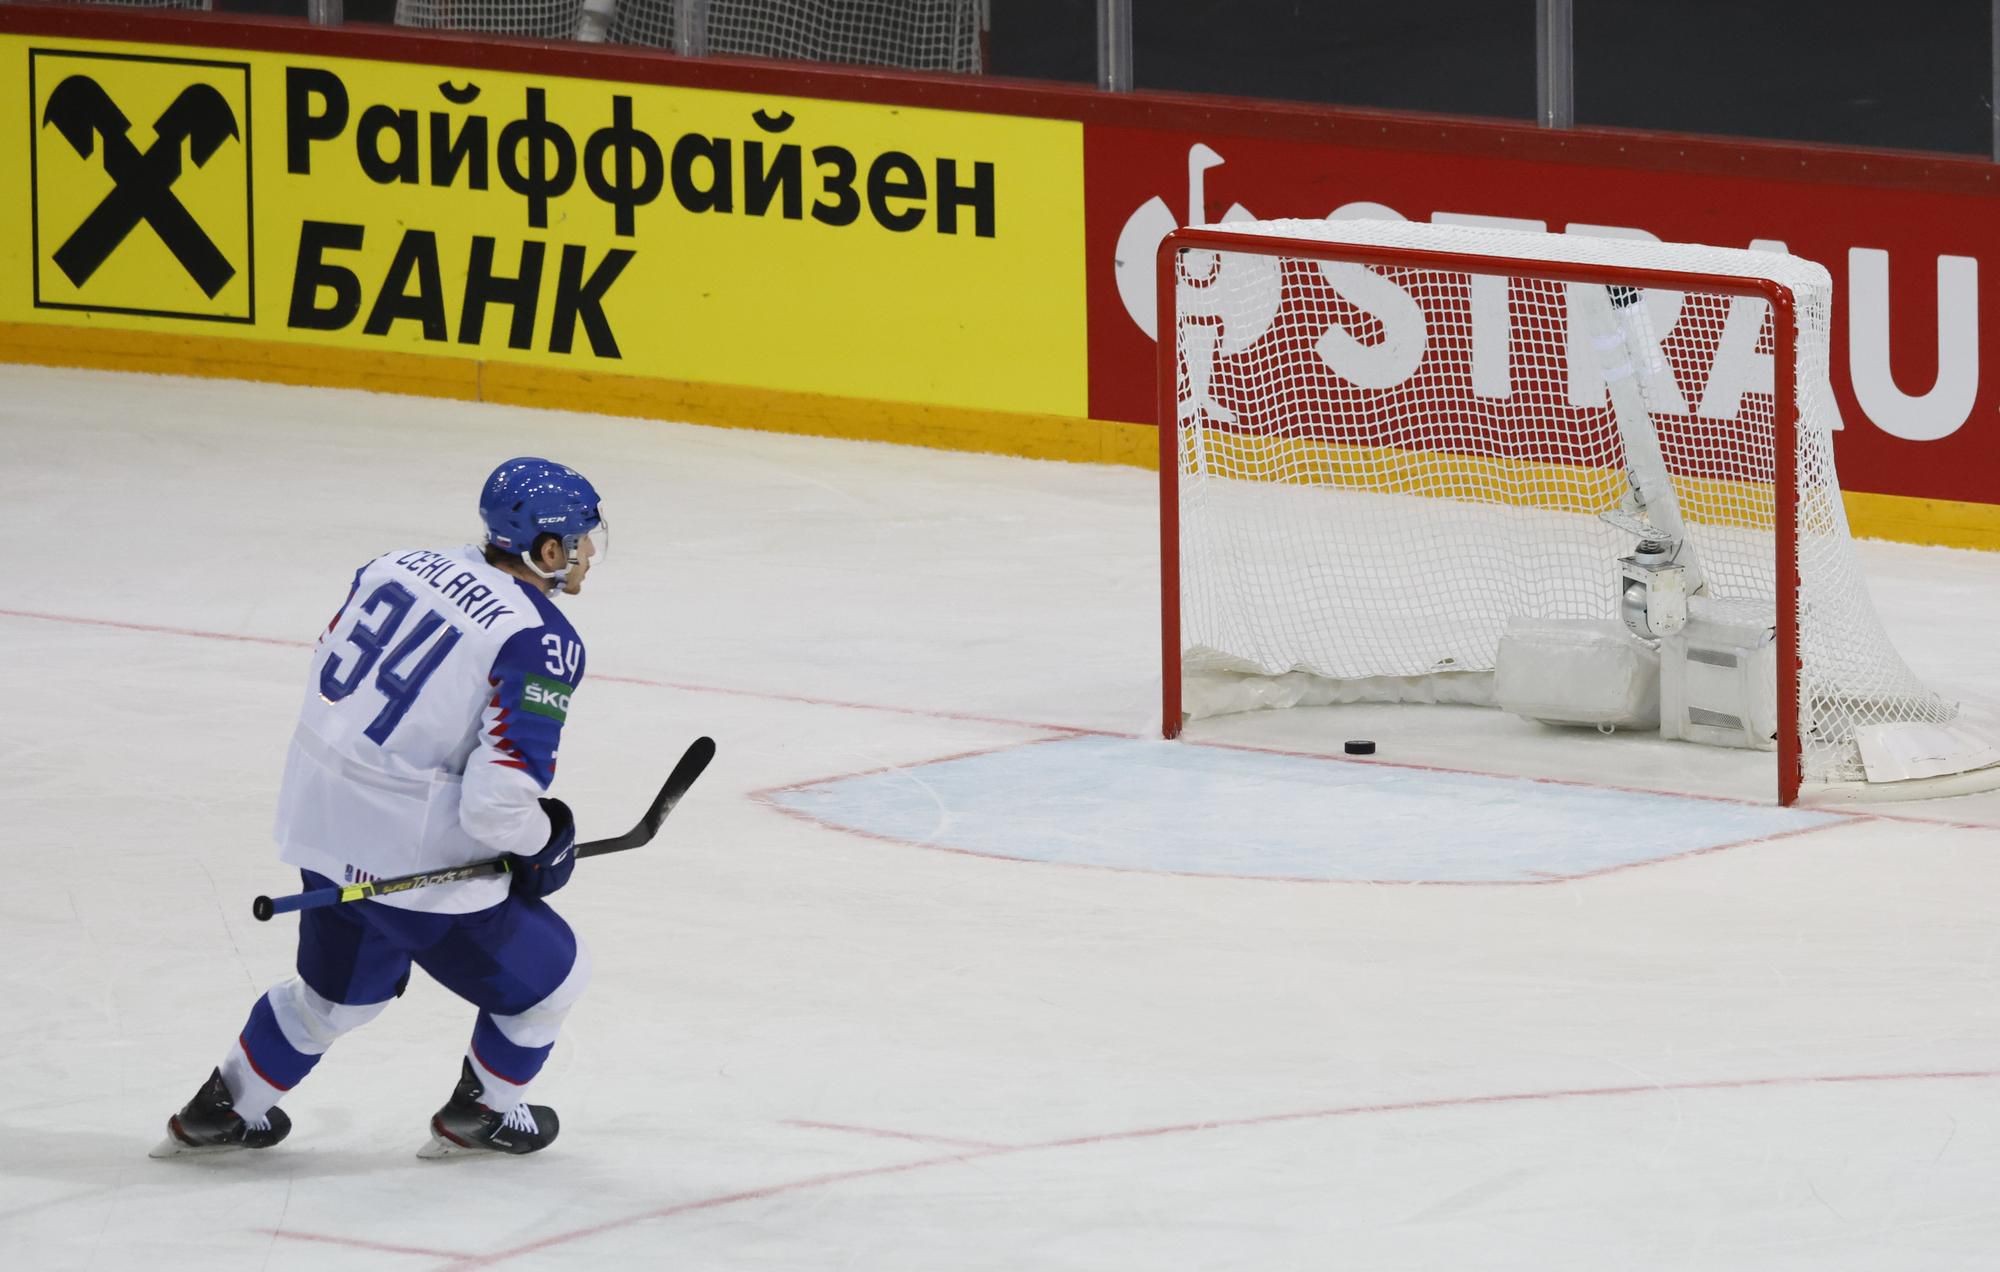 MS v hokeji 2021: Bielorusko - Slovensko (Peter Cehlárik strieľa gól do prázdnej brány)